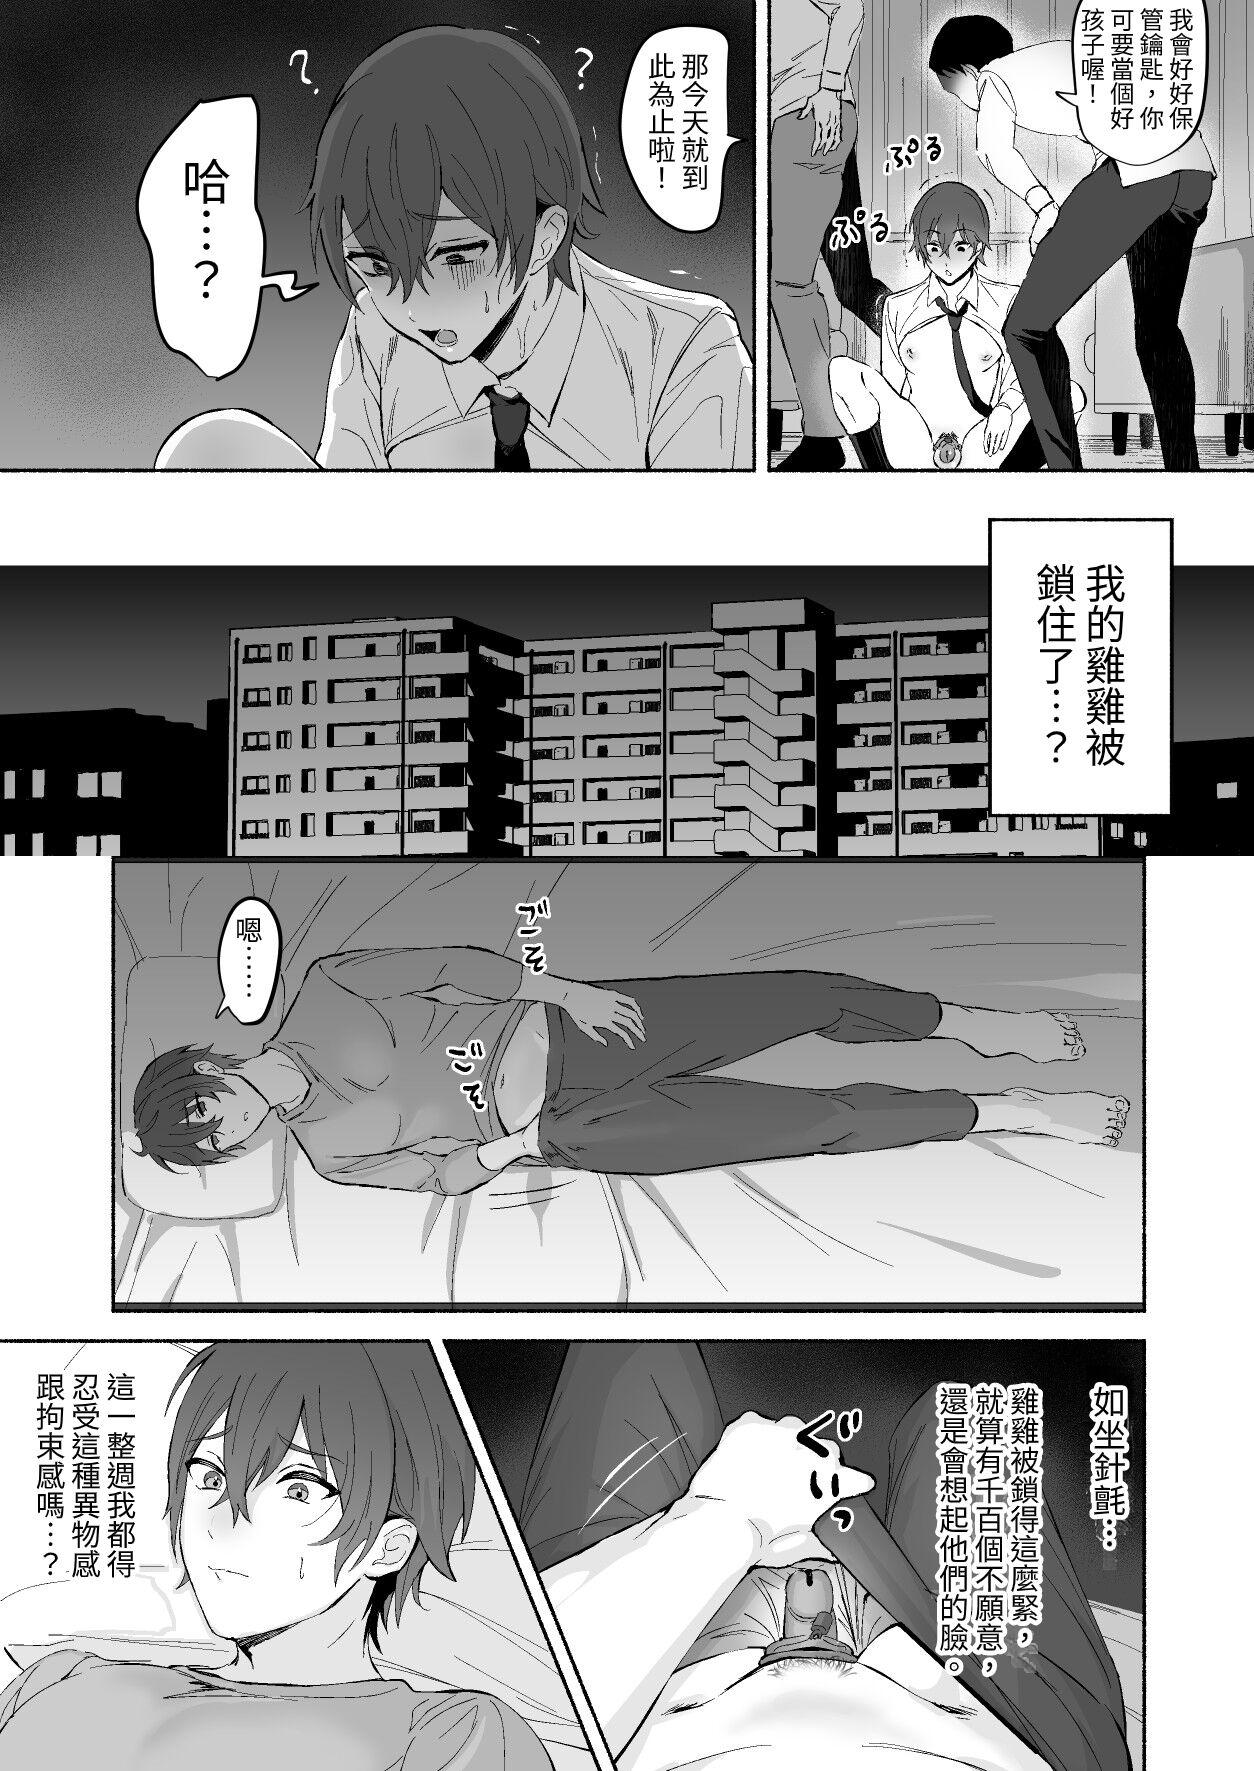 Tribbing Chikubi Shuuchuu Jirashi Seme | 乳頭集中吊胃口刺激 Teen Porn - Page 11